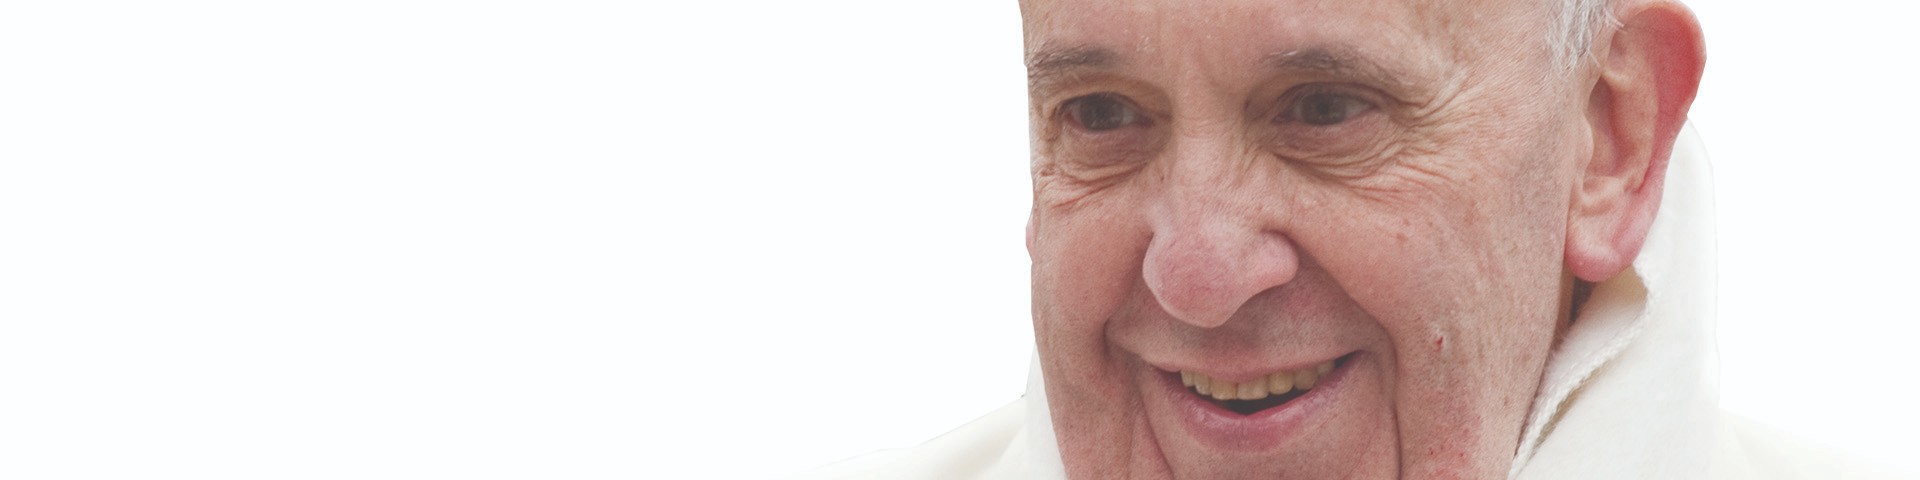 Orędzie Papieża Franciszka na XXVII Światowy Dzień Chorego 2019